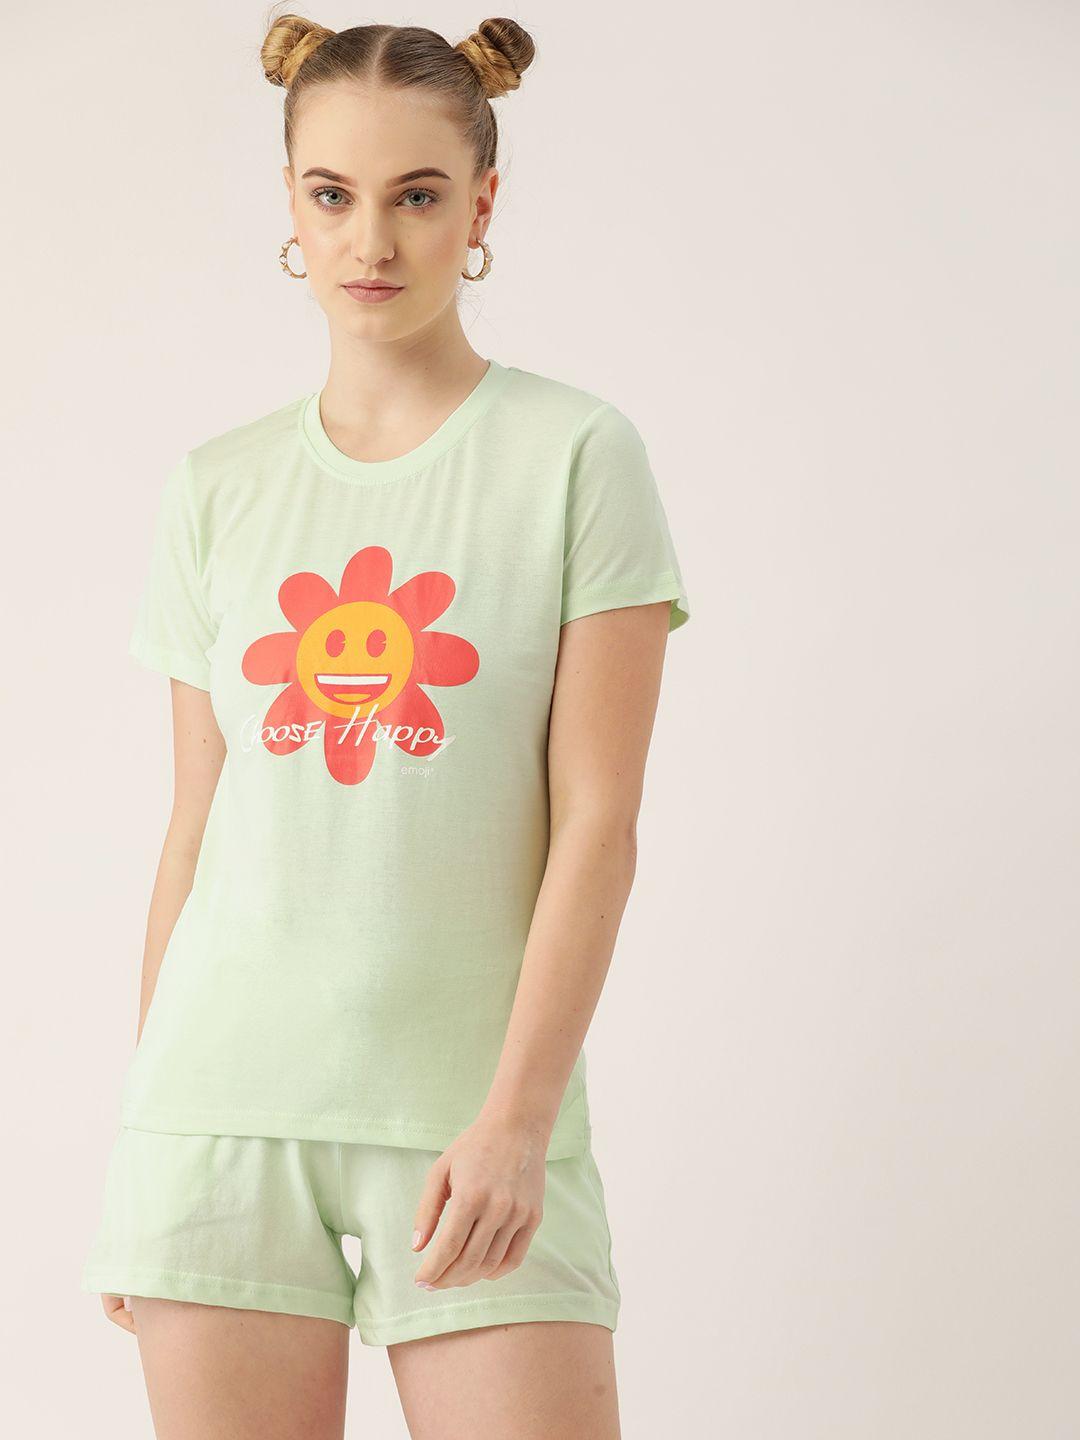 kook n keech emoji women green pure cotton printed t-shirt & shorts